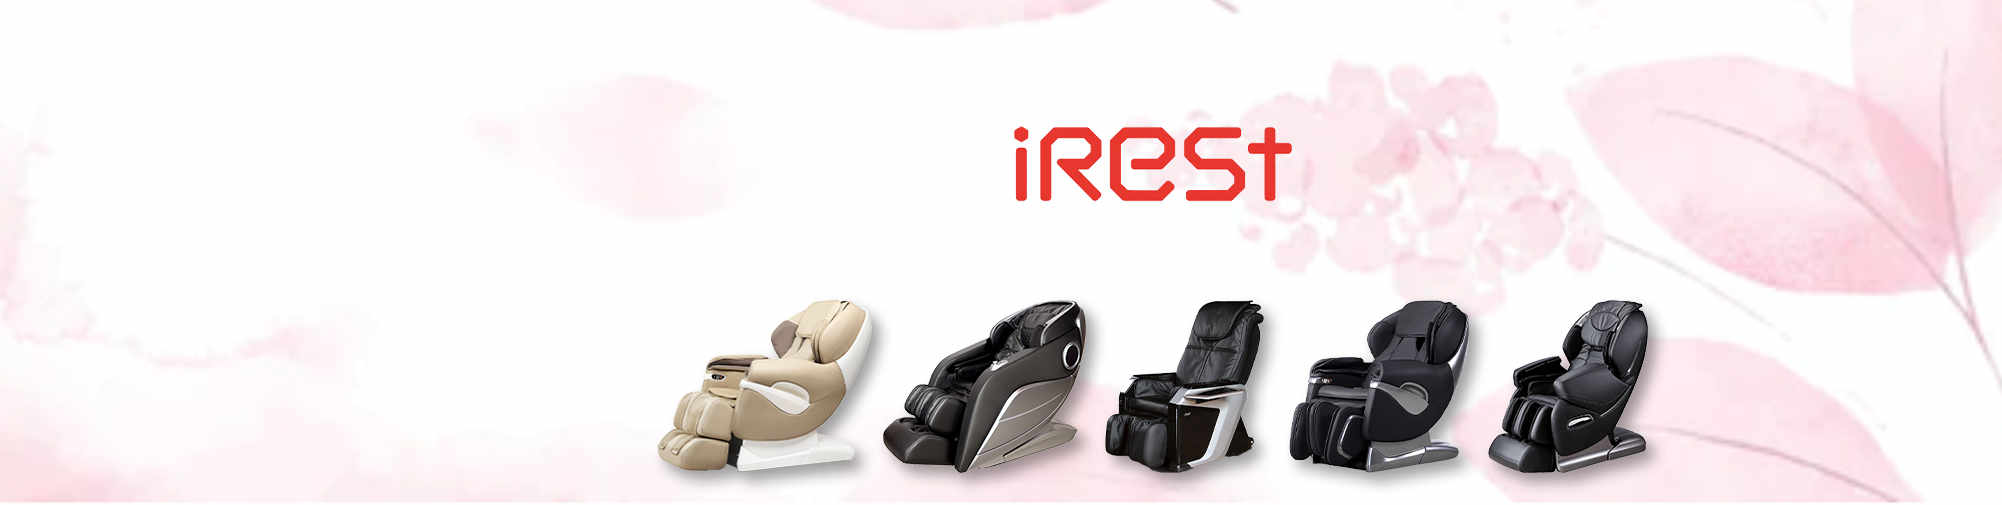 iRest - masaj koltuğu pazarına yeni bir soluk getiriyor | Massagesessel Welt